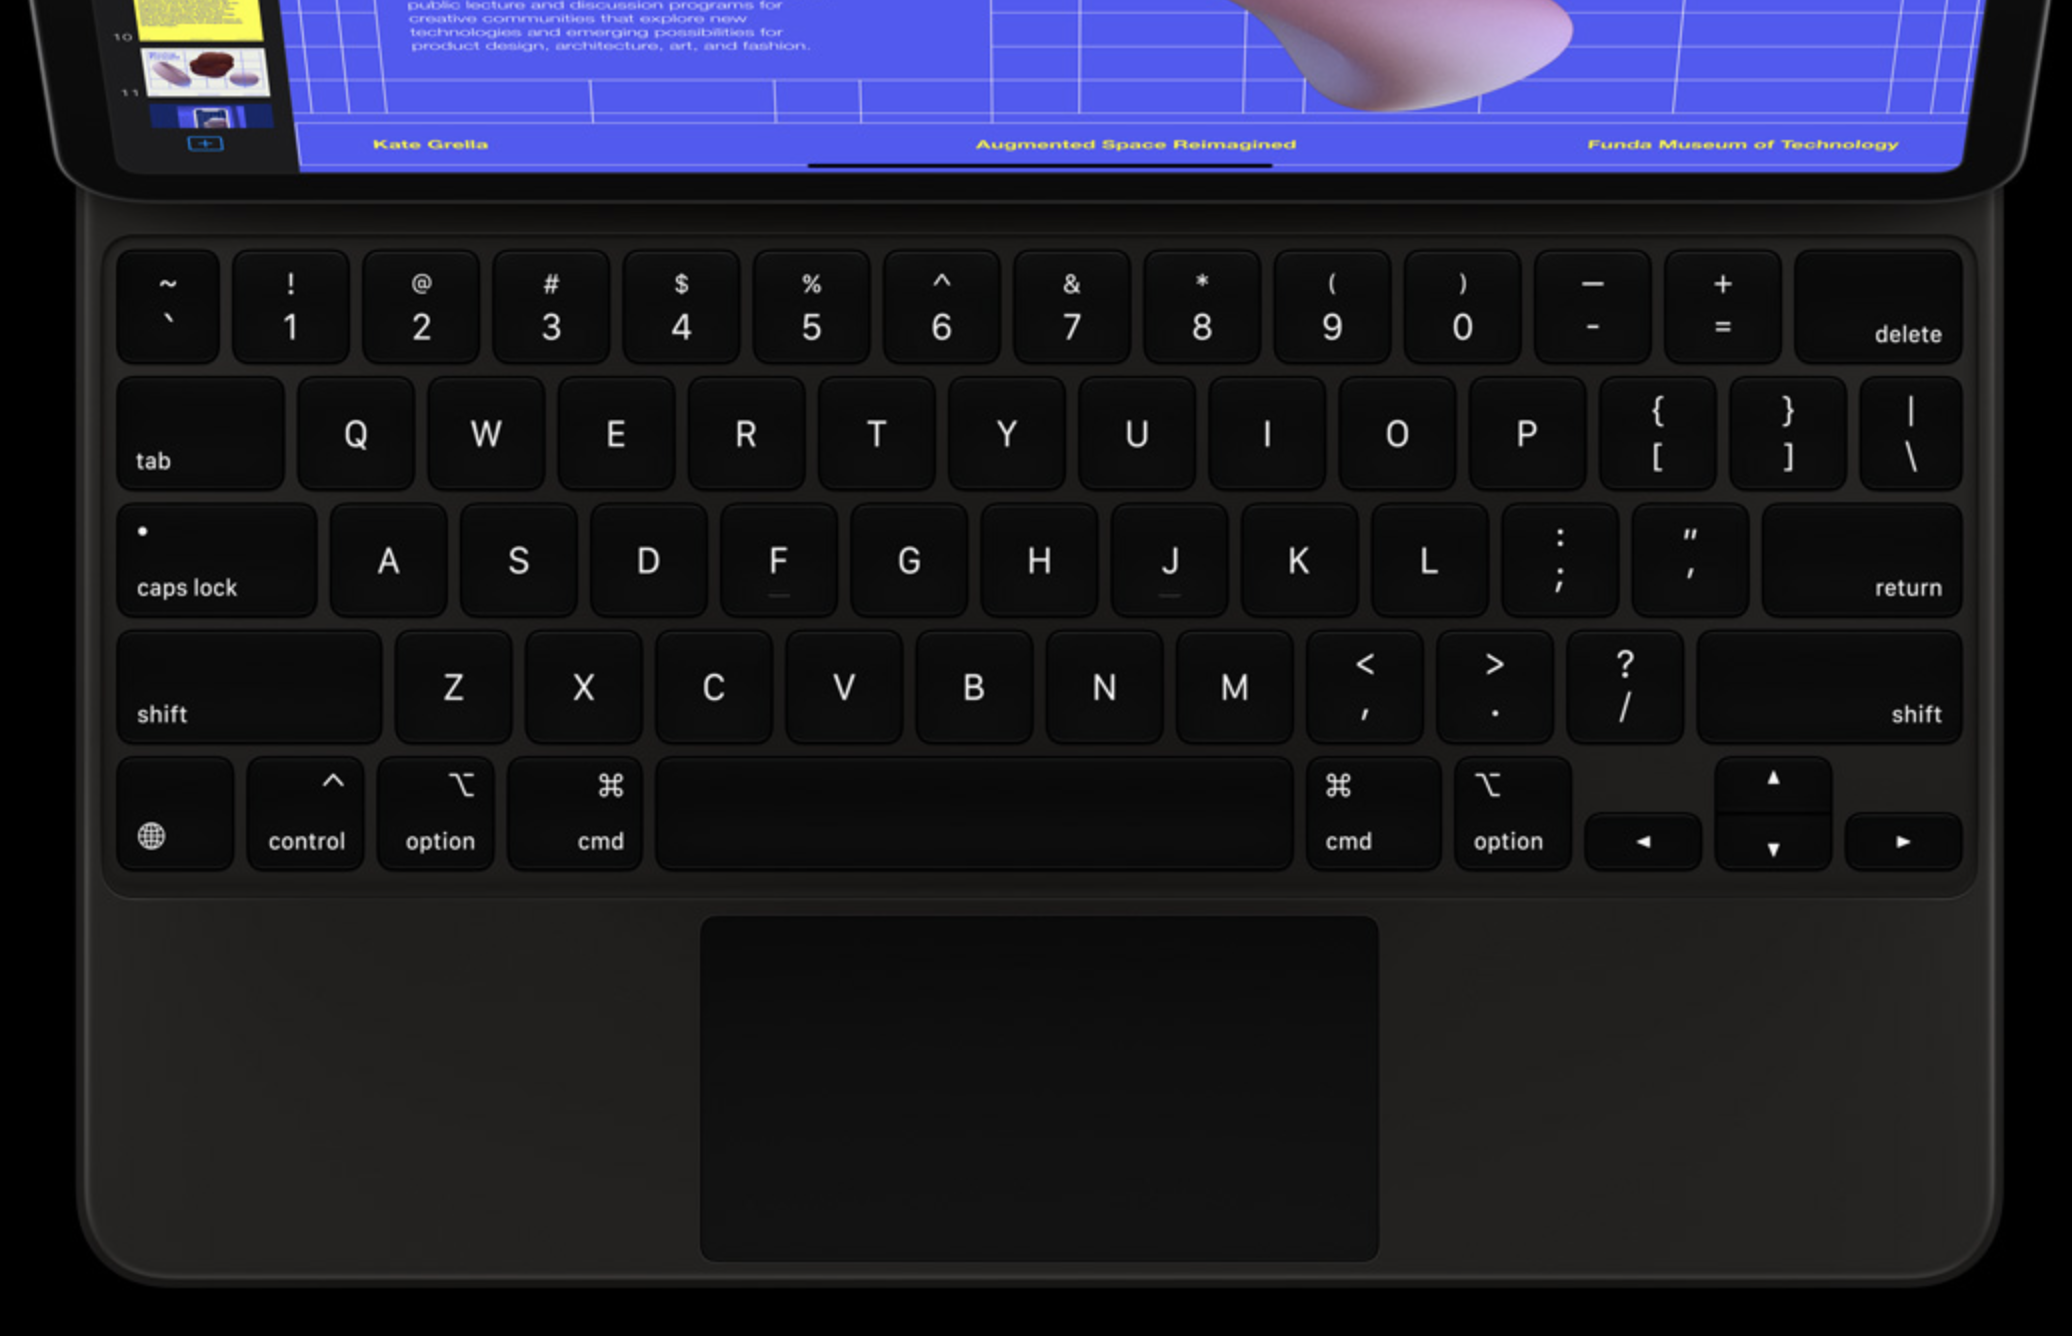 Phím bấm của Keyboard iPad Pro12.9 sử dụng cấu trúc ngắt chéo có độ bền cao